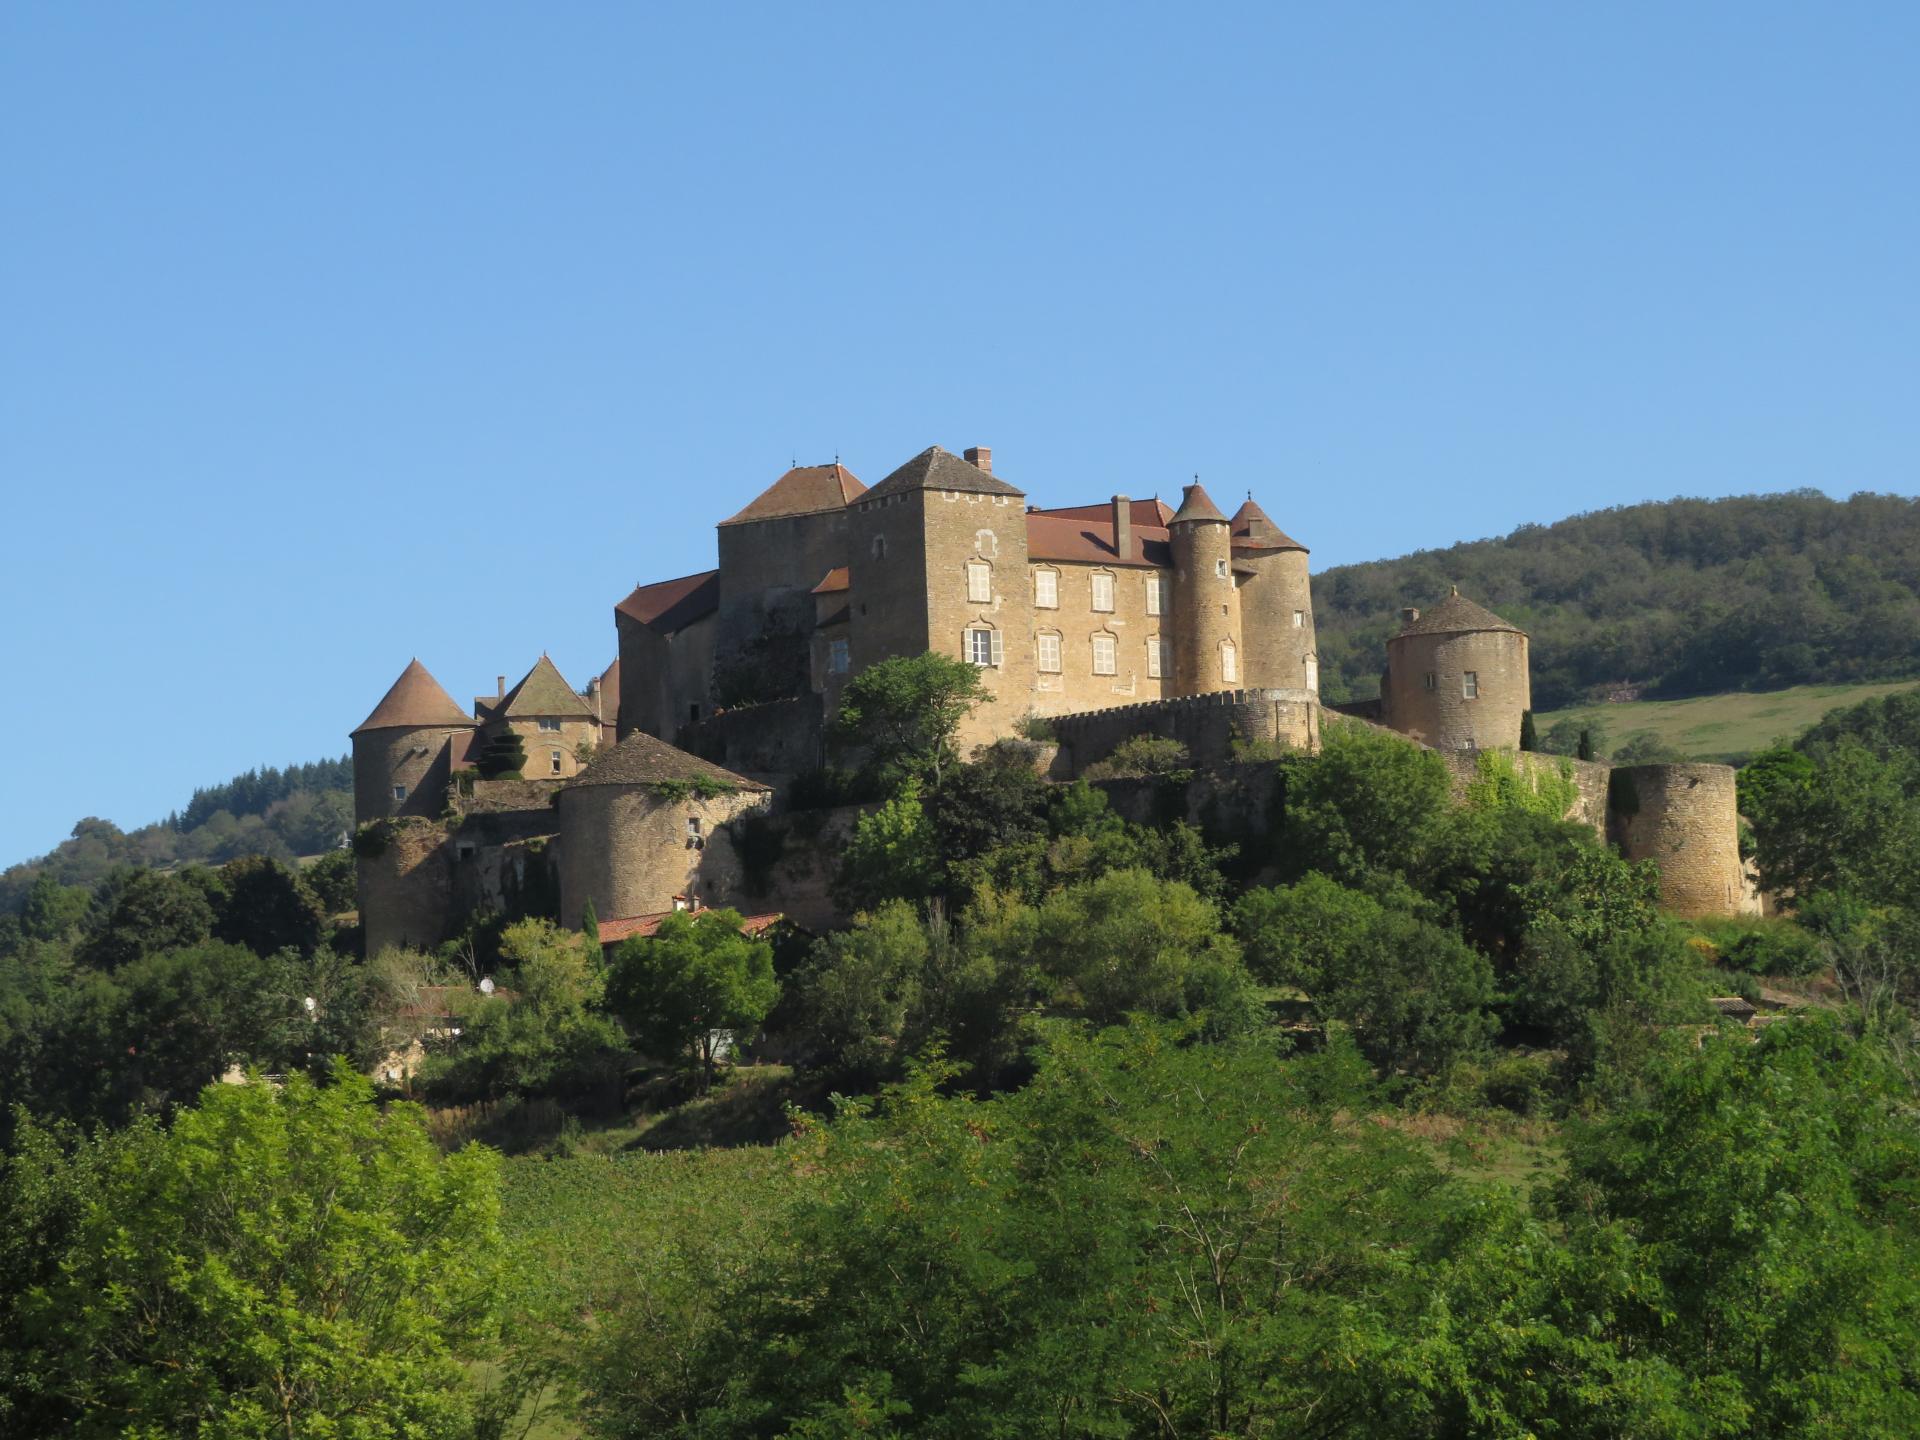 Château de Berzé-le-Châtel